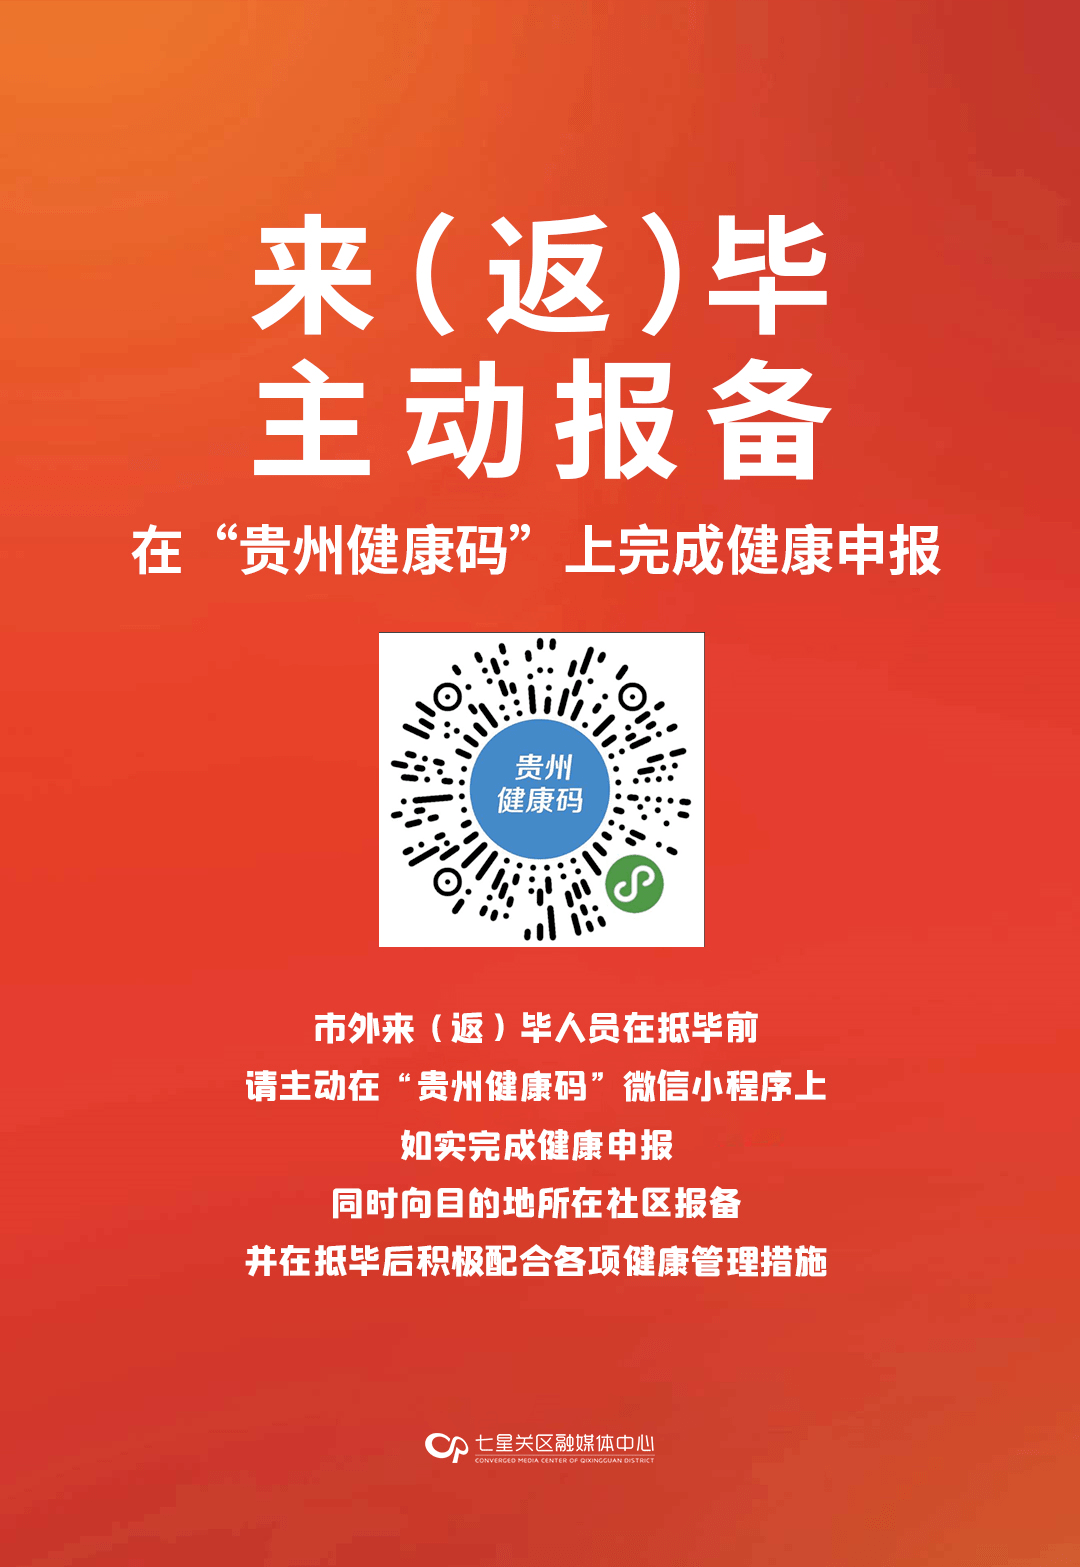 贵州健康行程码二维码图片